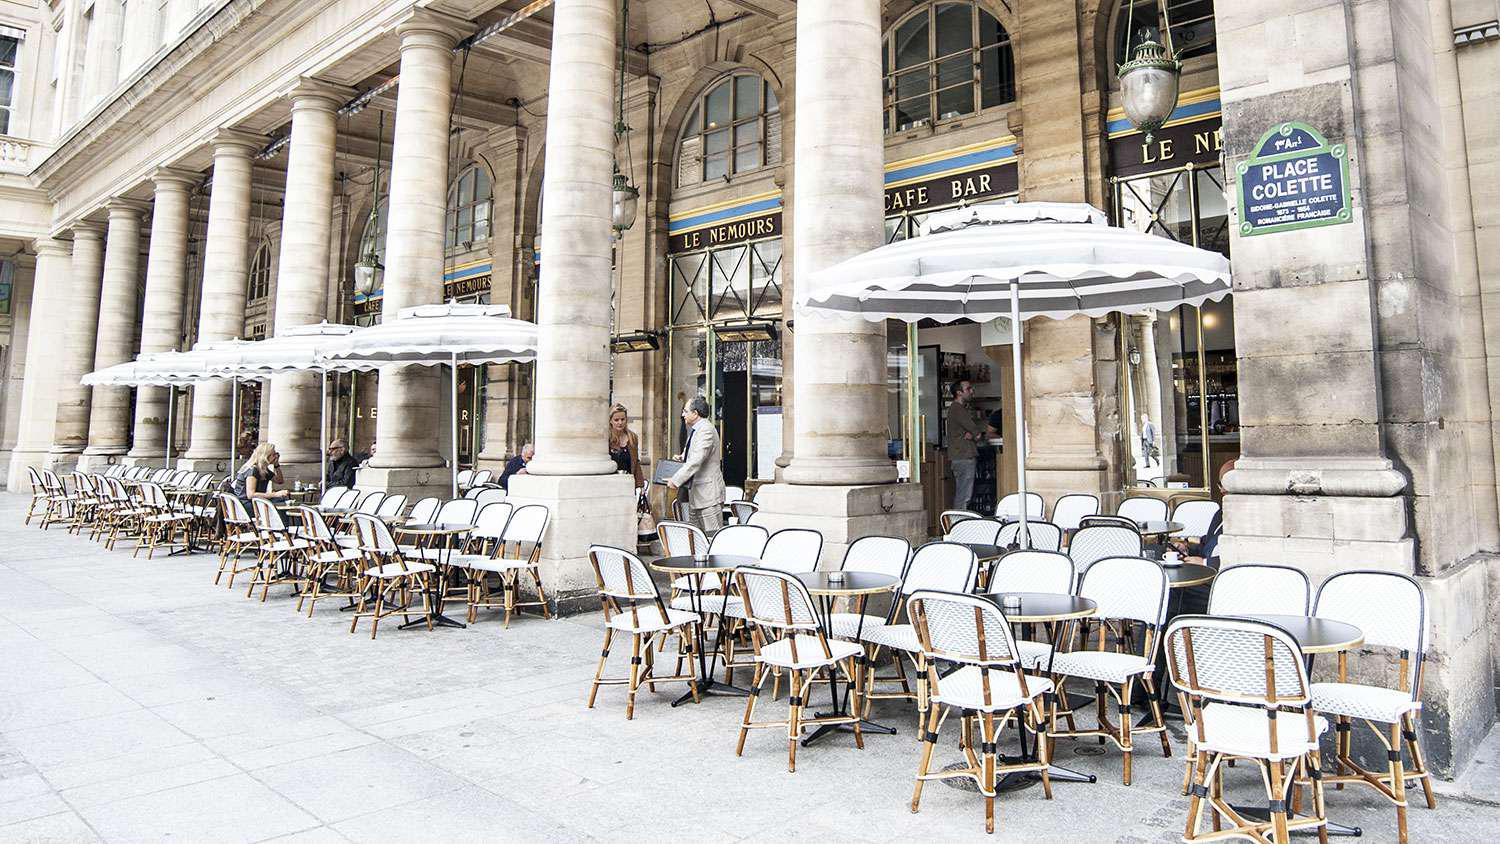 Restaurant Le Nemours à Paris